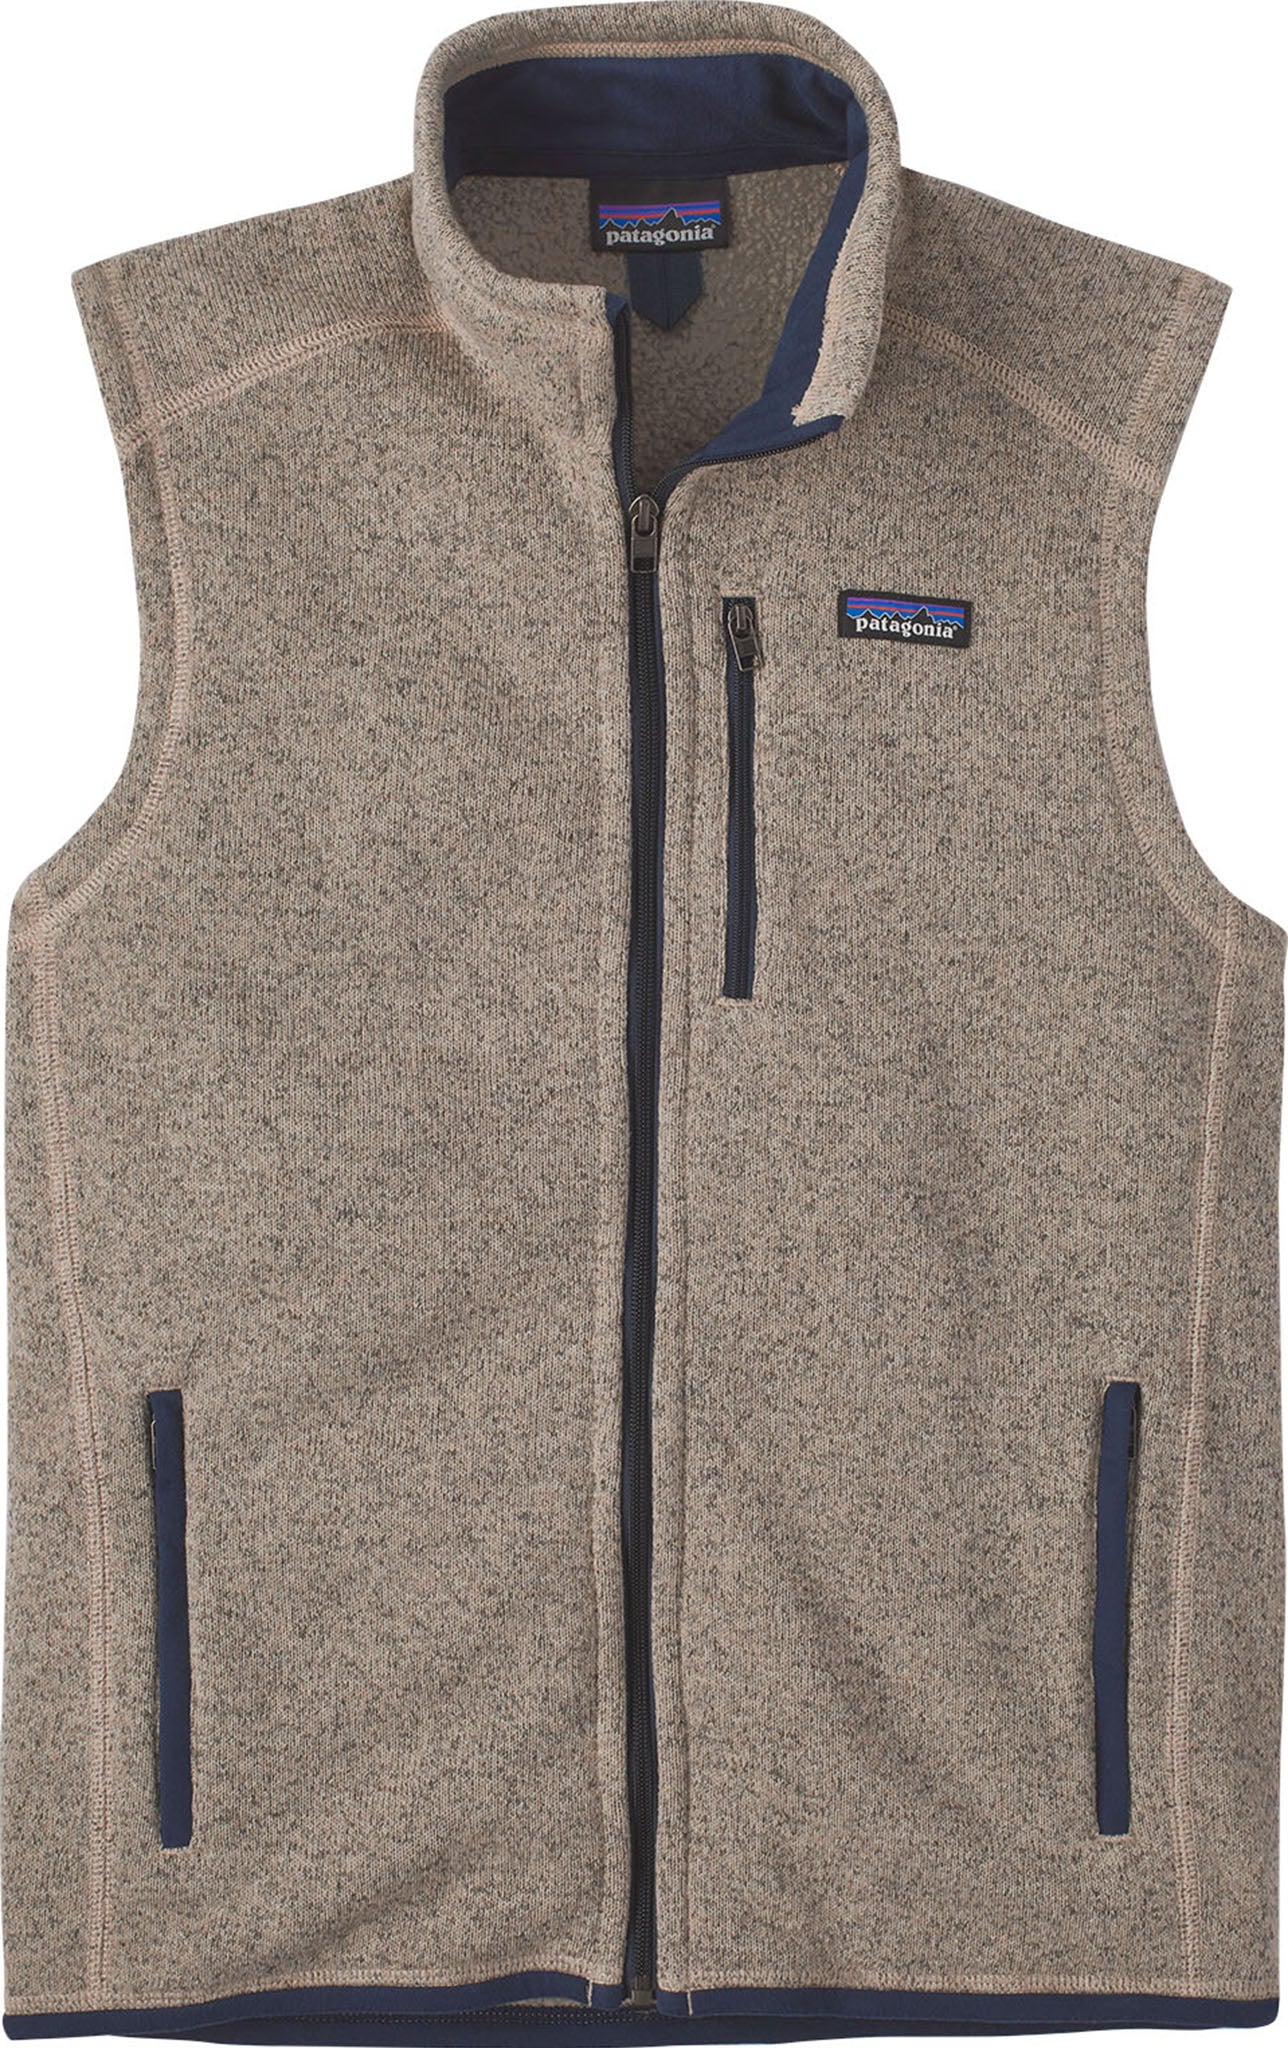 Women's Sweater Fleece Vest